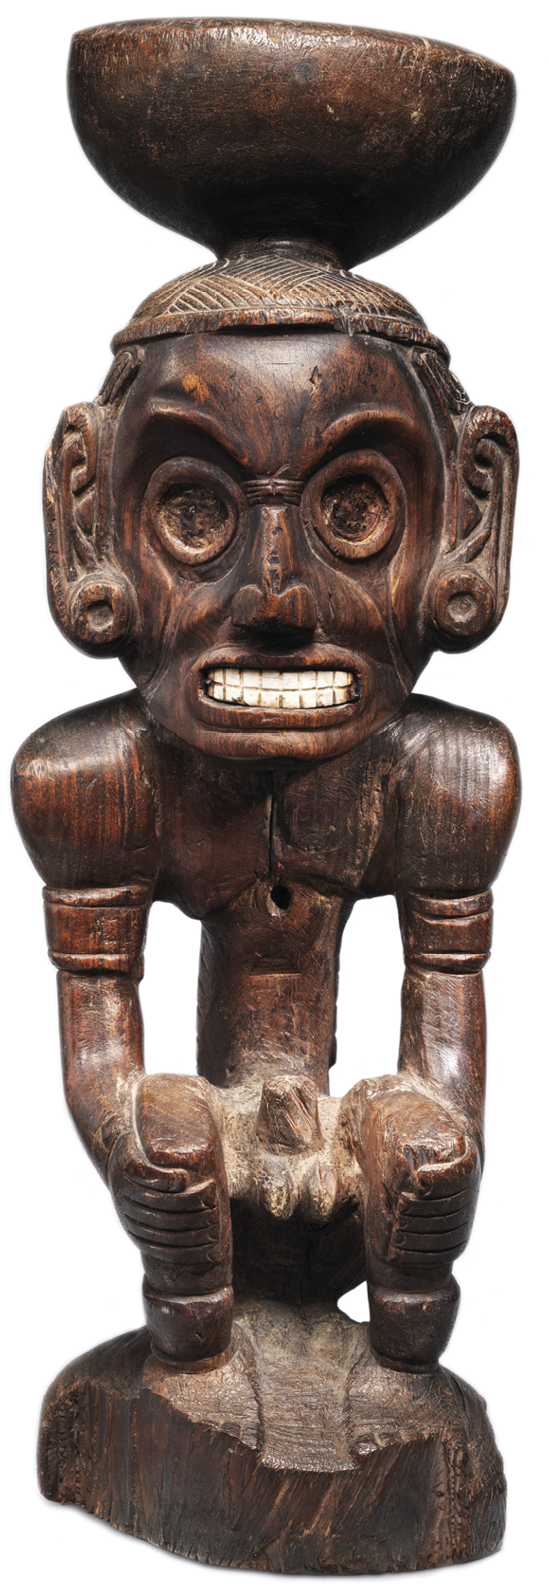 Fotografia. Escultura de madeira de um homem nu com os dentes cerrados sentado com as mãos nos joelhos e um pote na cabeça.